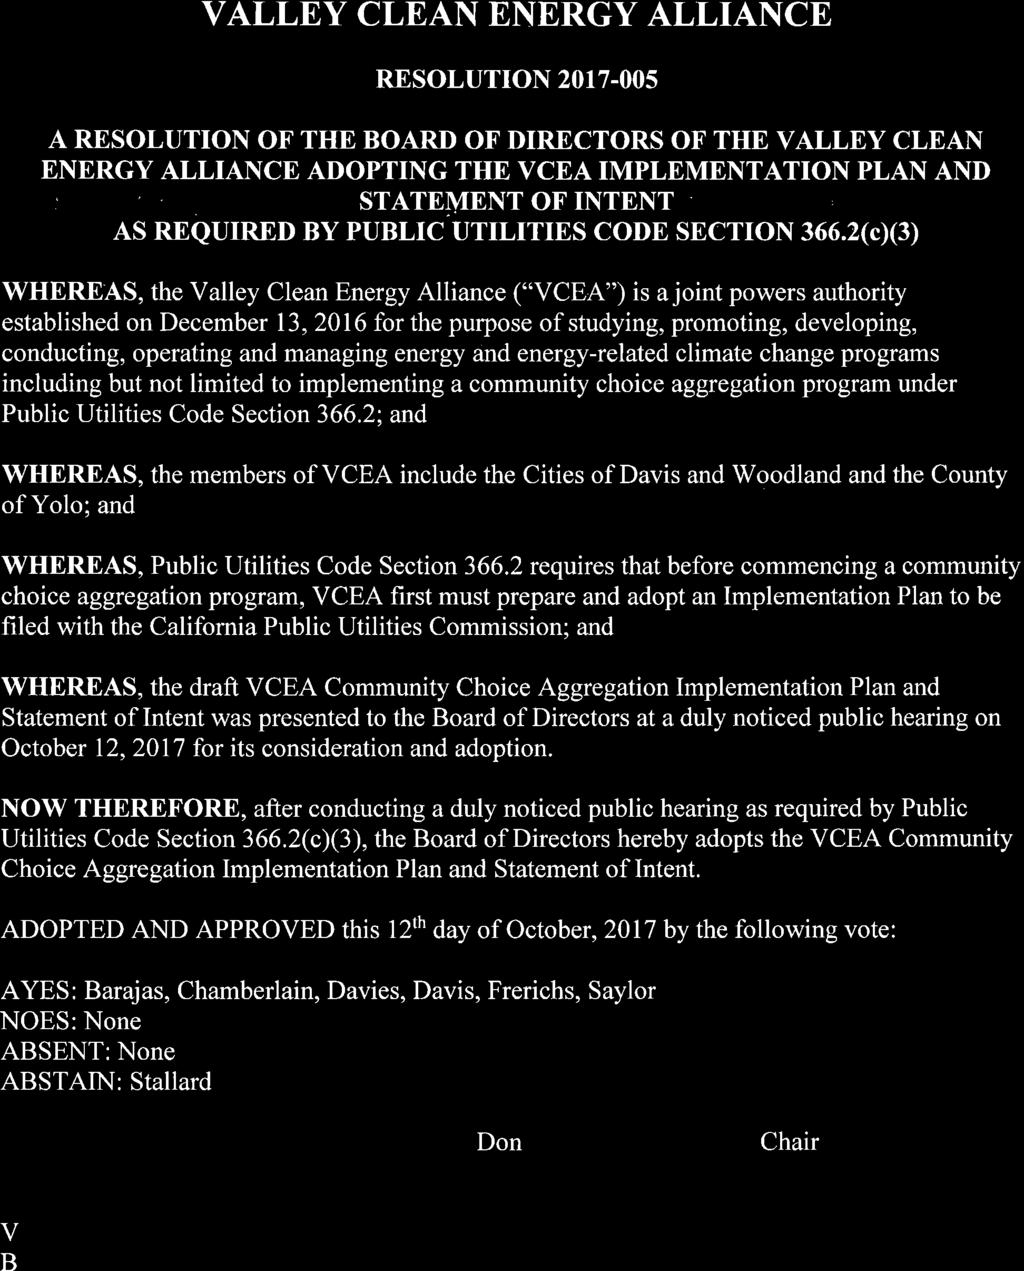 Appendix A: VCEA Resolution